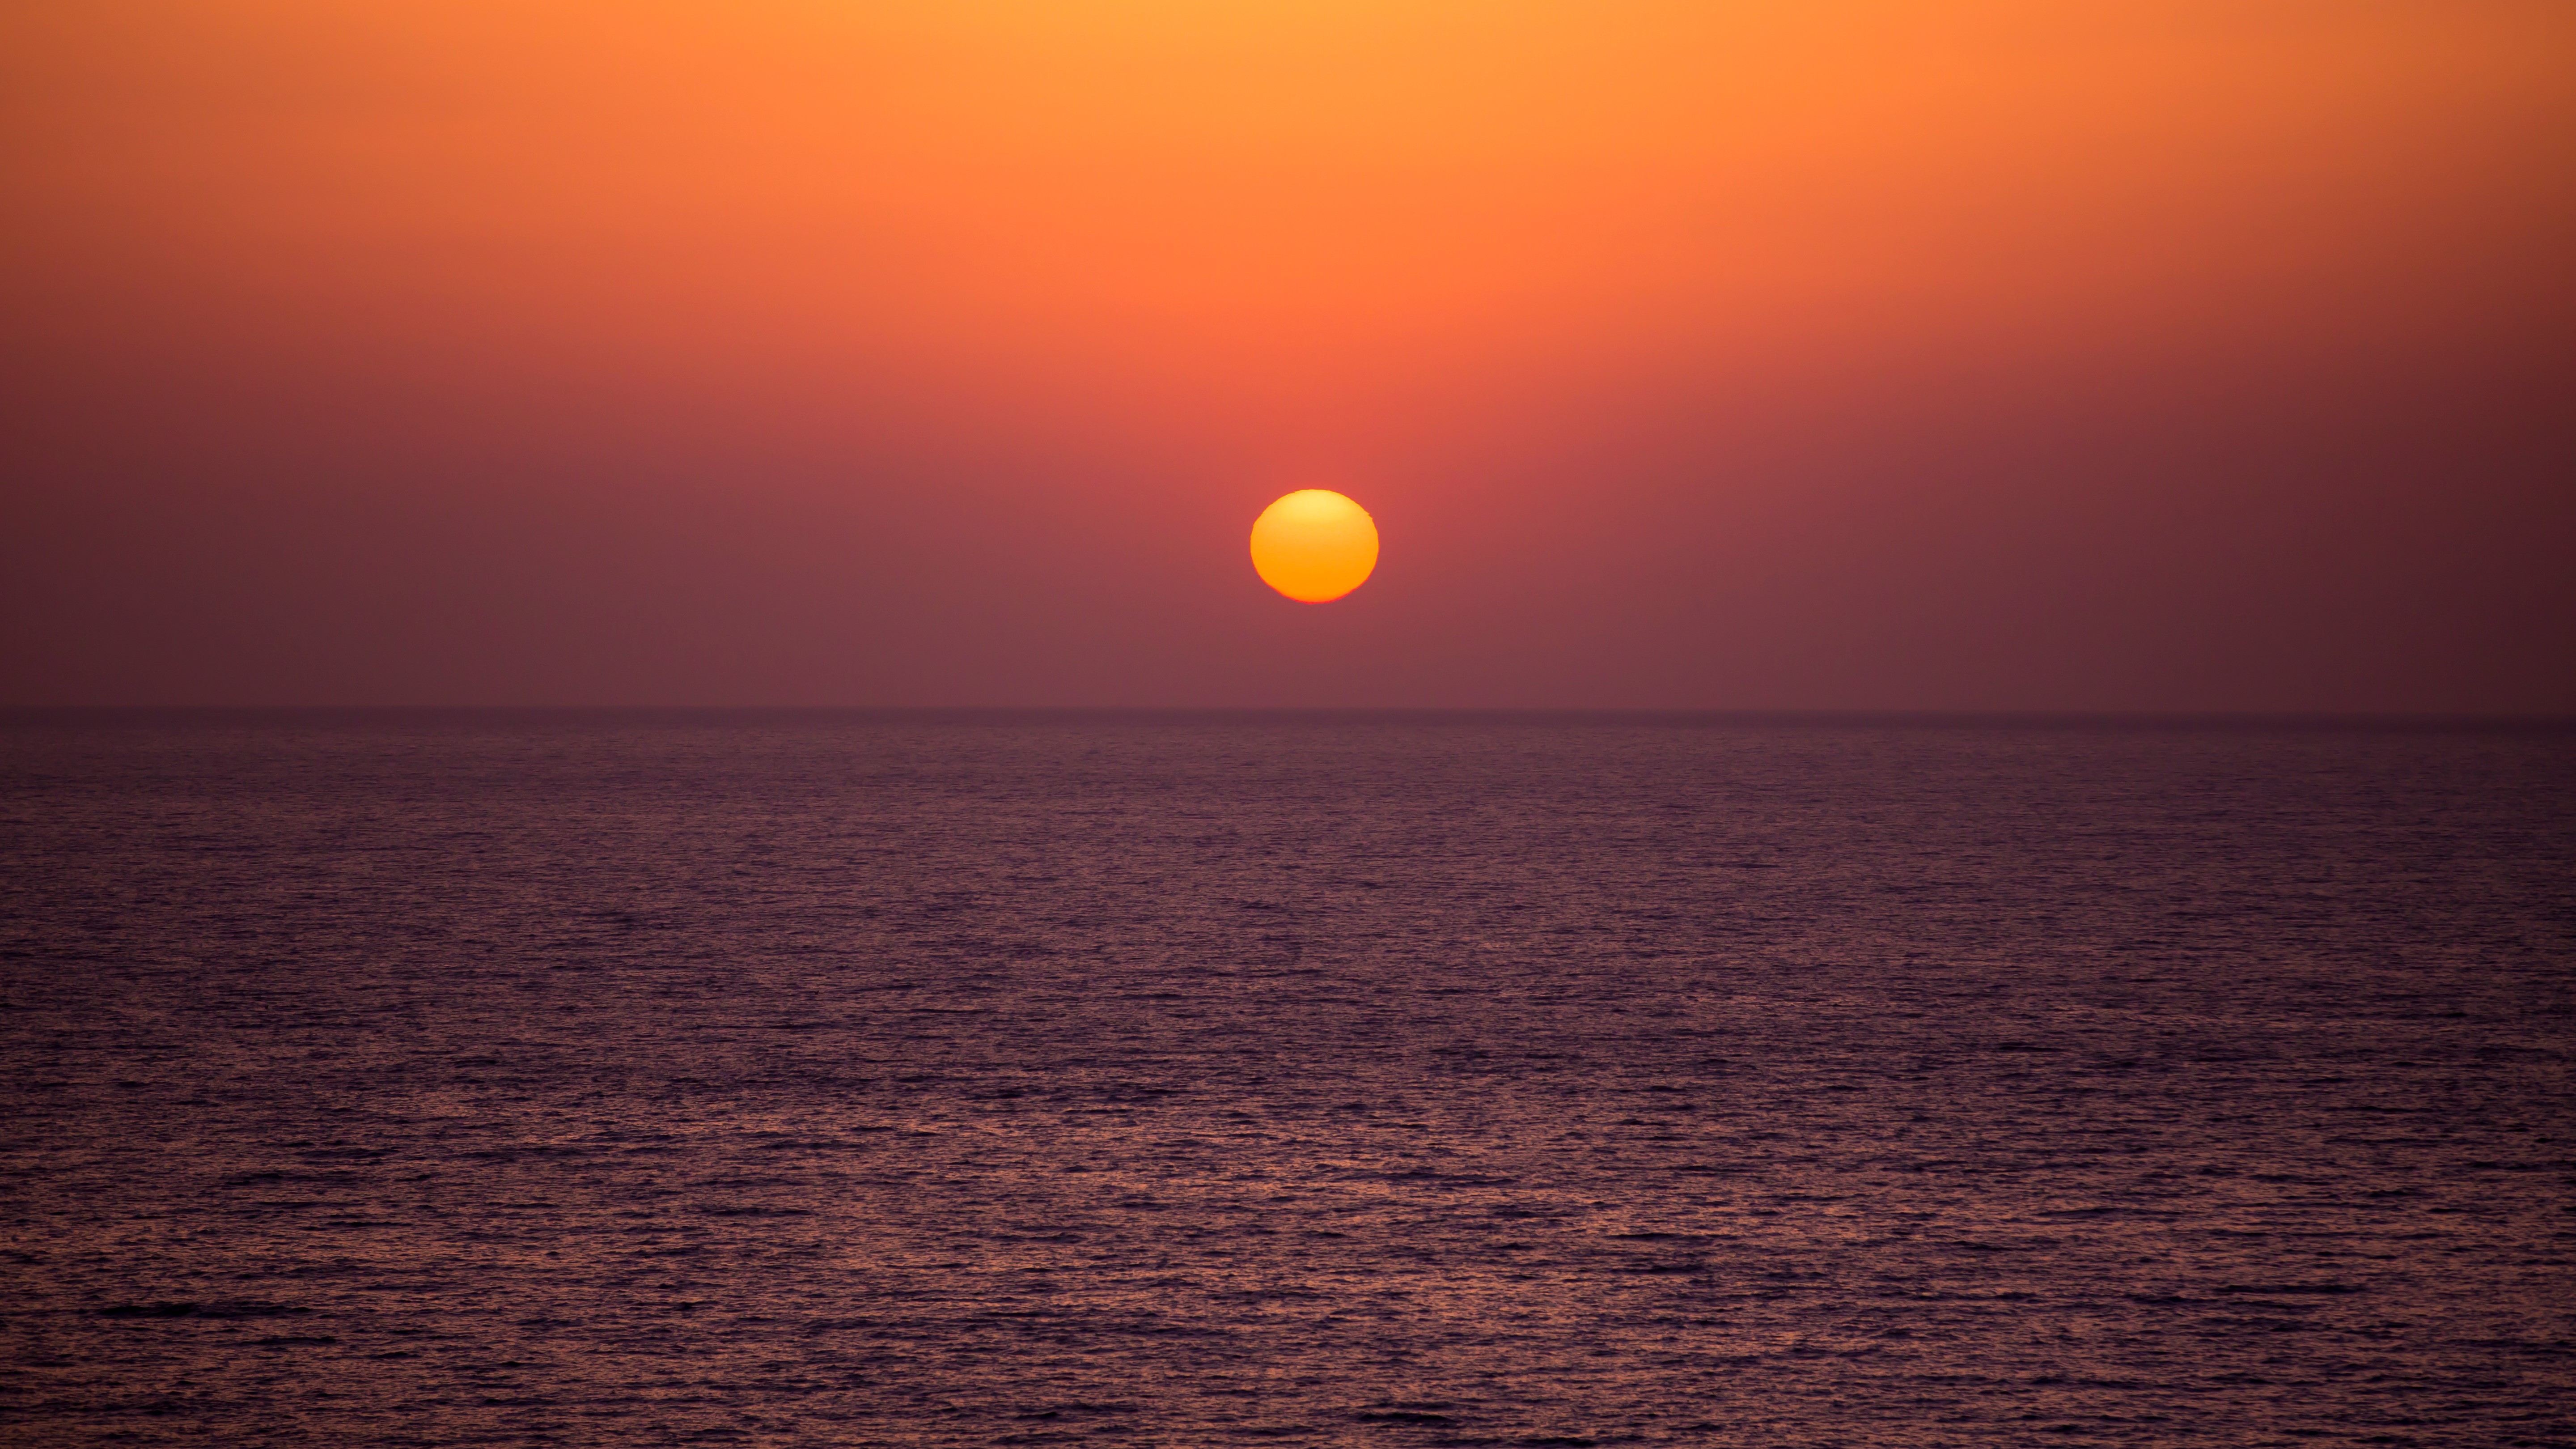 【寿海亭からの夕景】夏の夕日は海の真ん中に落ちます。真っ赤に染まる日本海の情景を愉しんで。